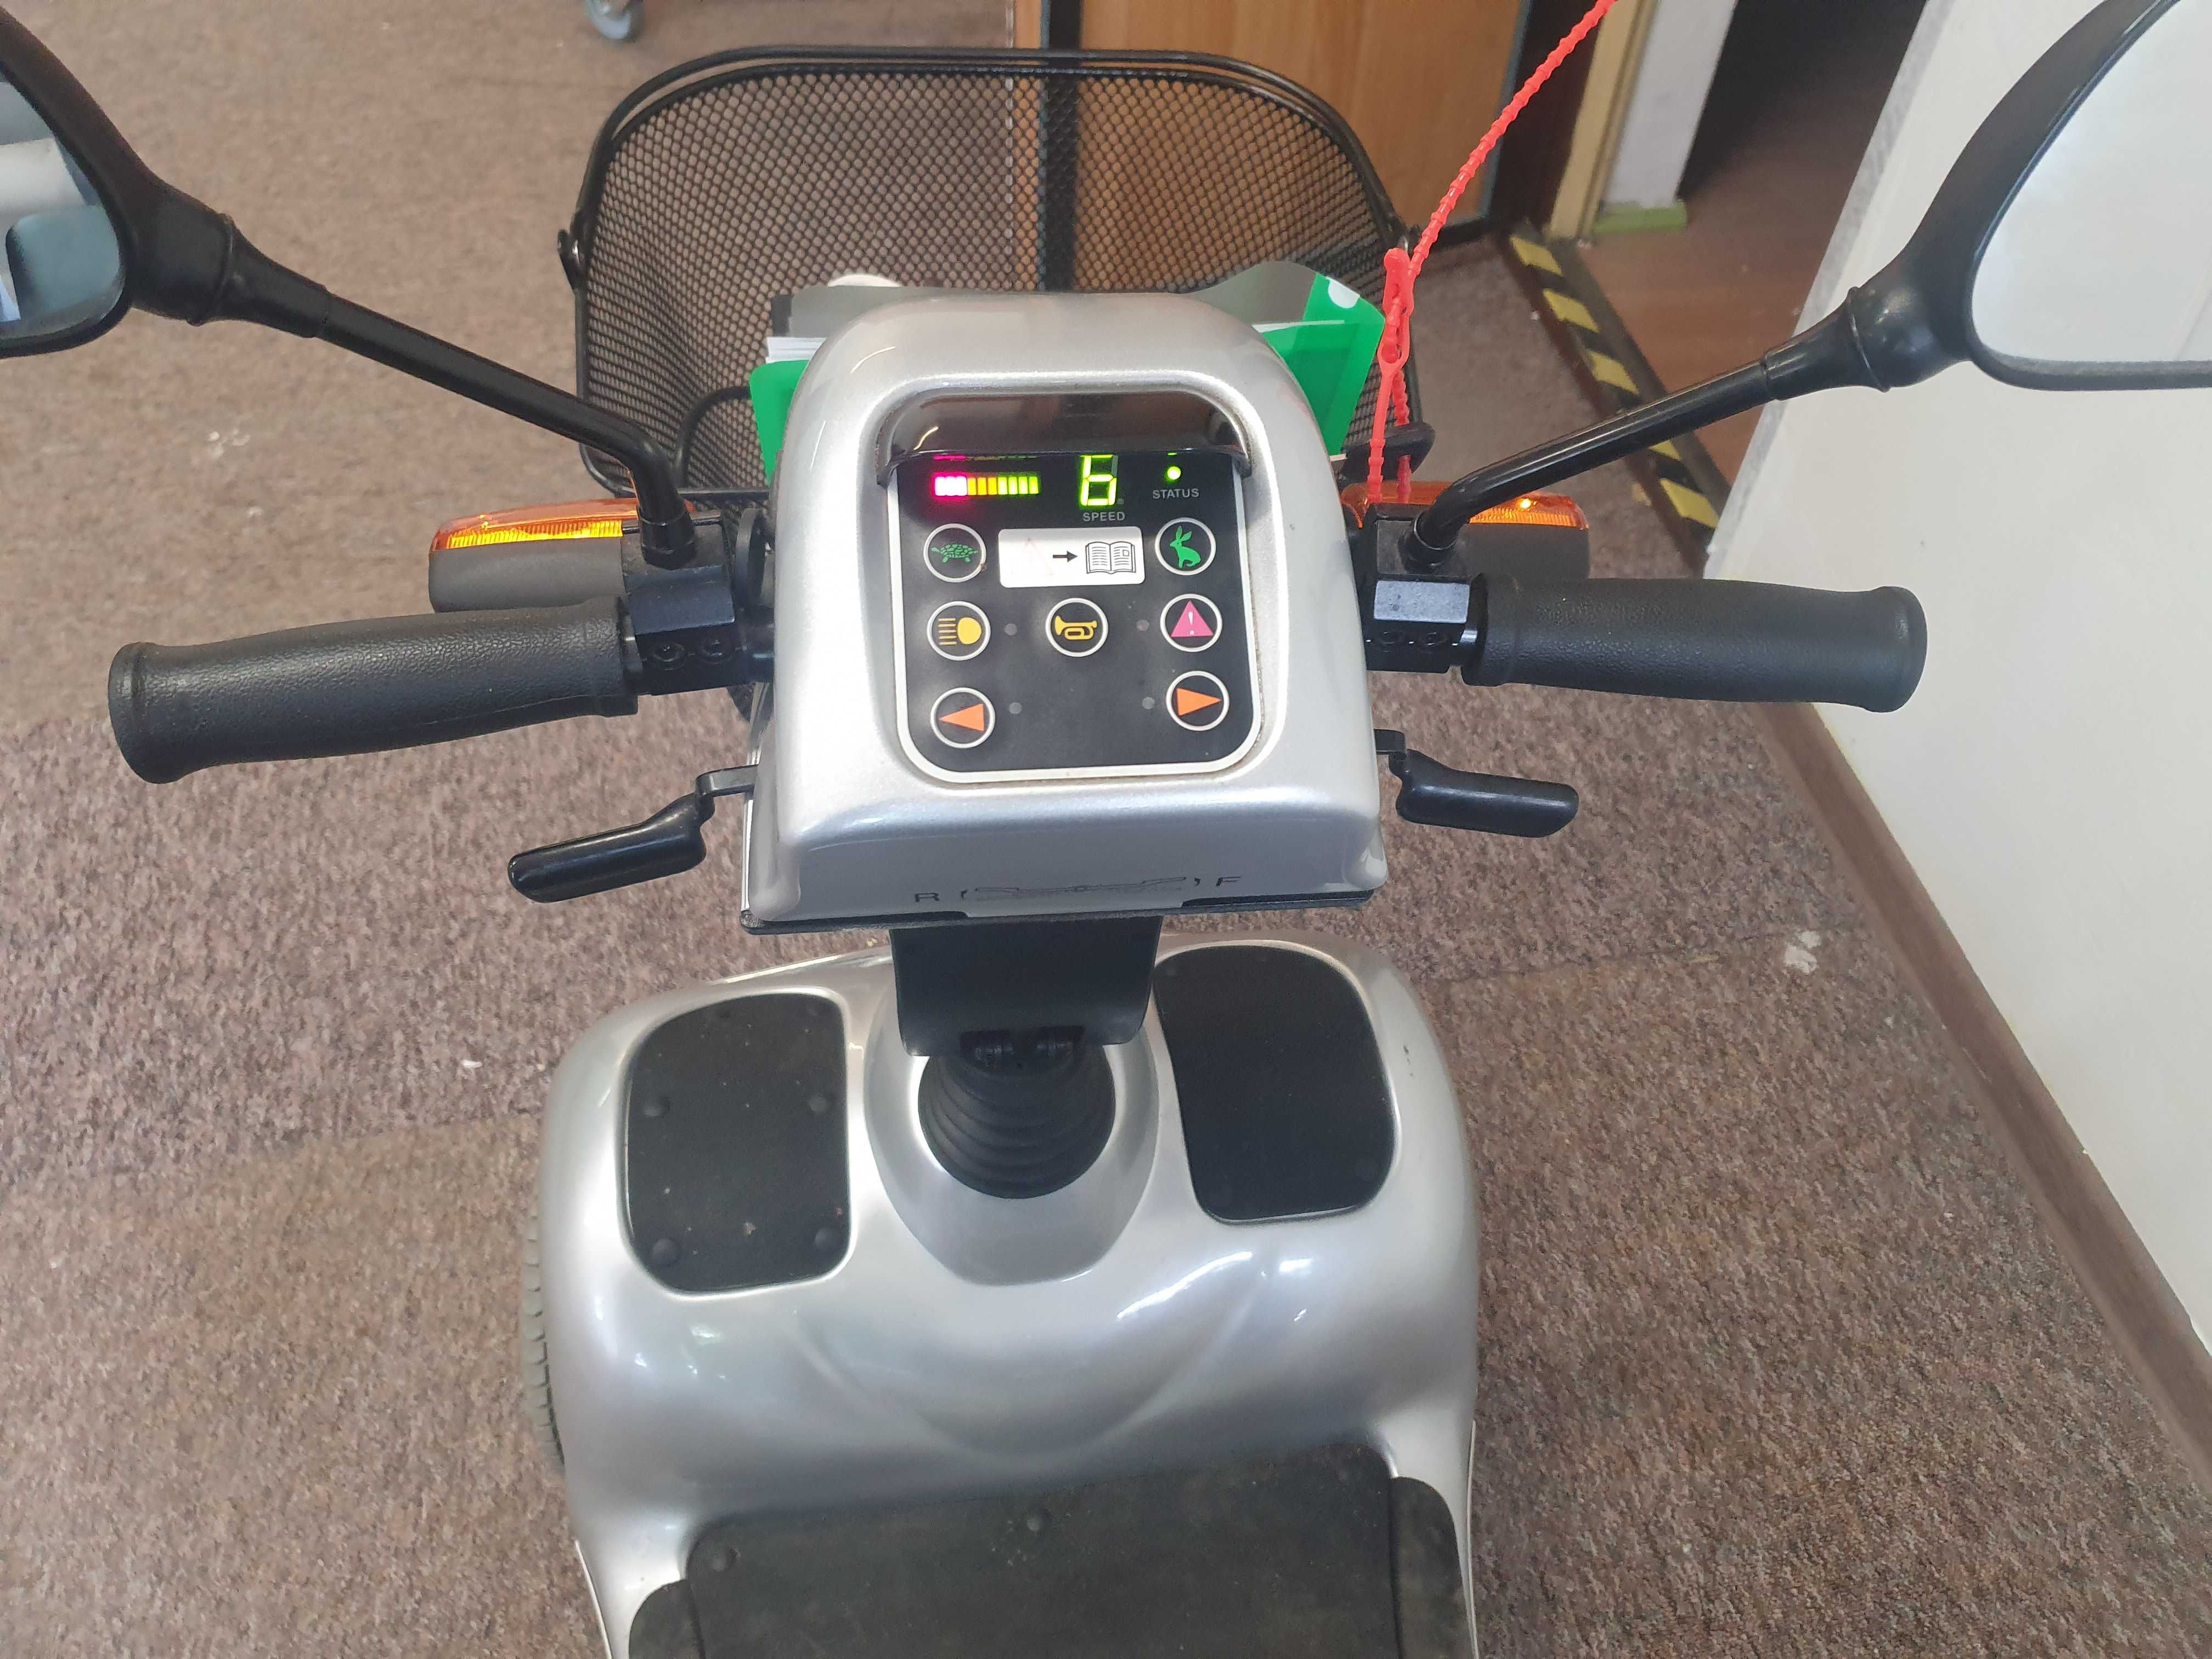 Wynajem skuter inwalidzki elektryczny, wózek elektryczny. Dostawa